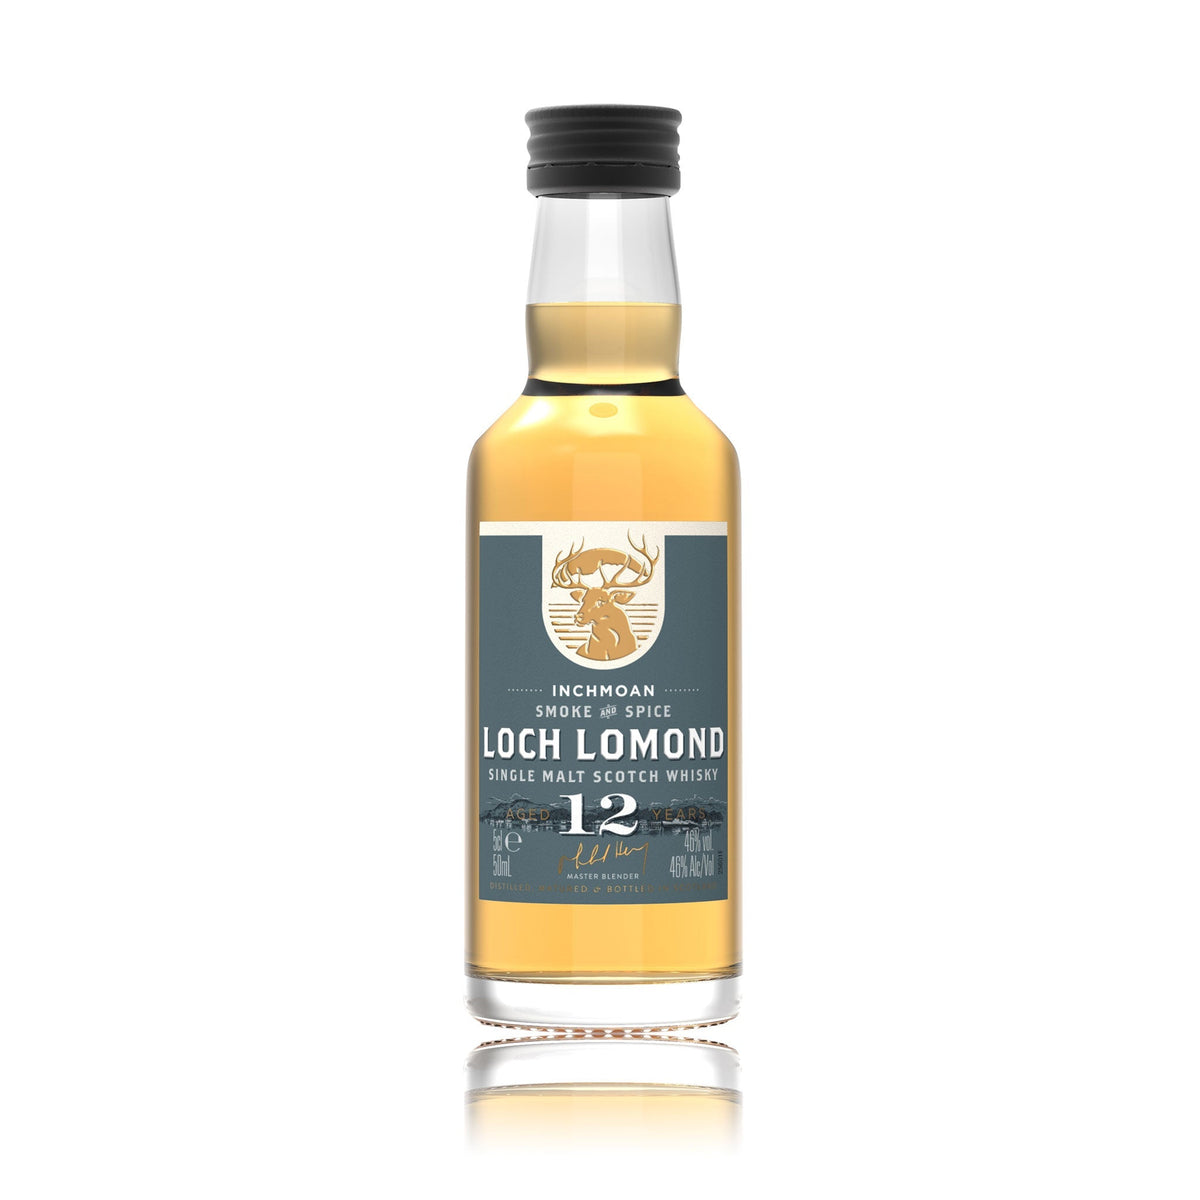 Loch Lomond Inchmoan 12 Year Old 5cl Whisky Miniature - Loch Lomond Group